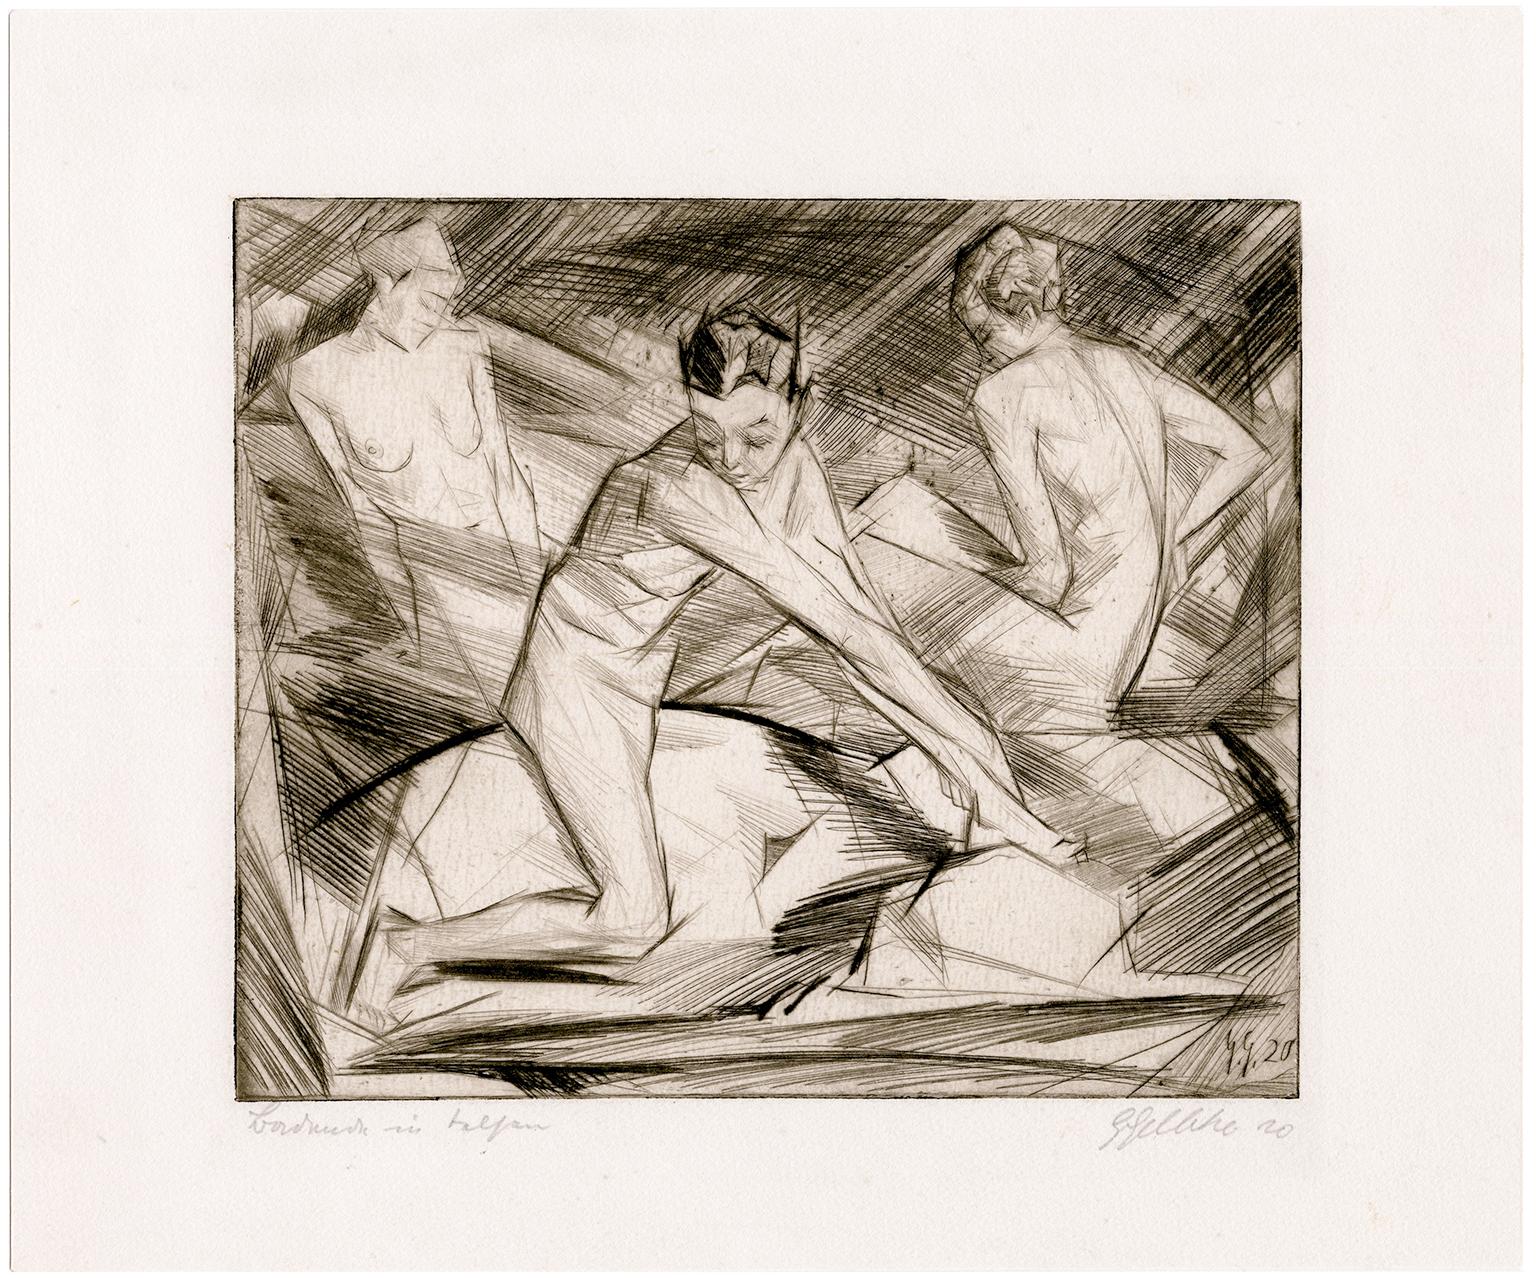 Badende Frauen - Deutscher Expressionismus, Akte, 1920 – Print von Georg Gelbke